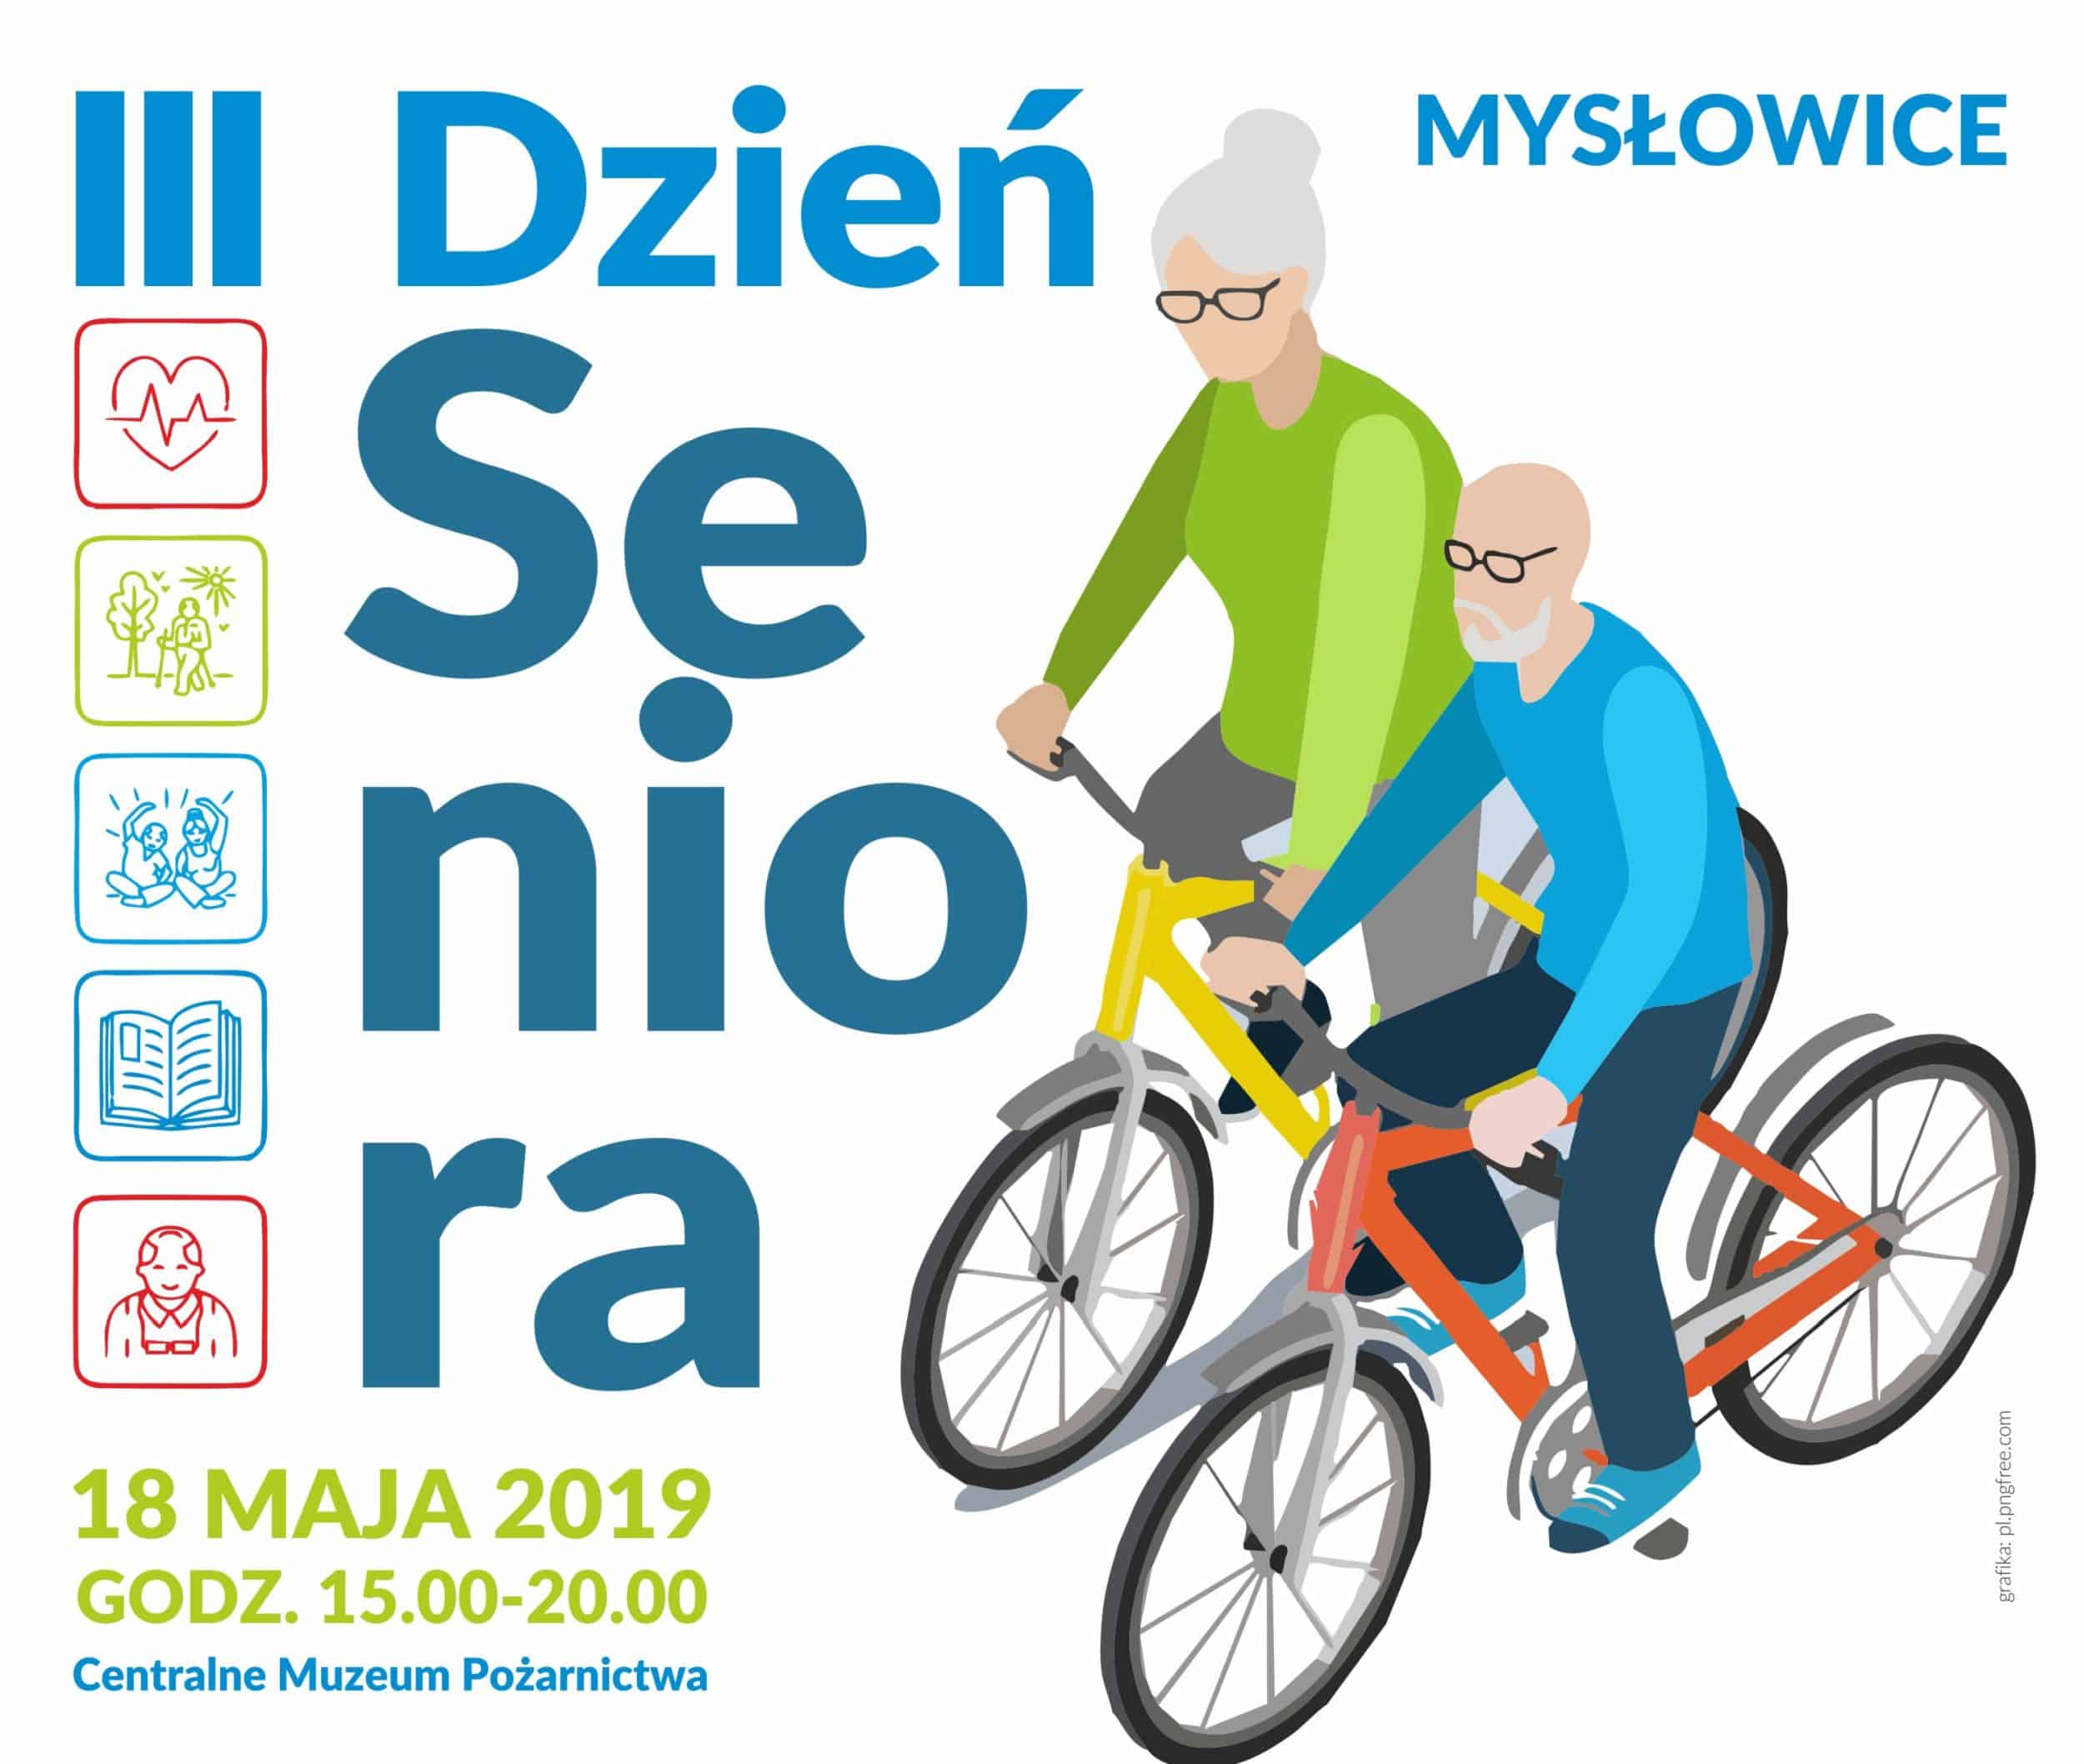 III Dzień Seniora w Mysłowicach już 18 maja